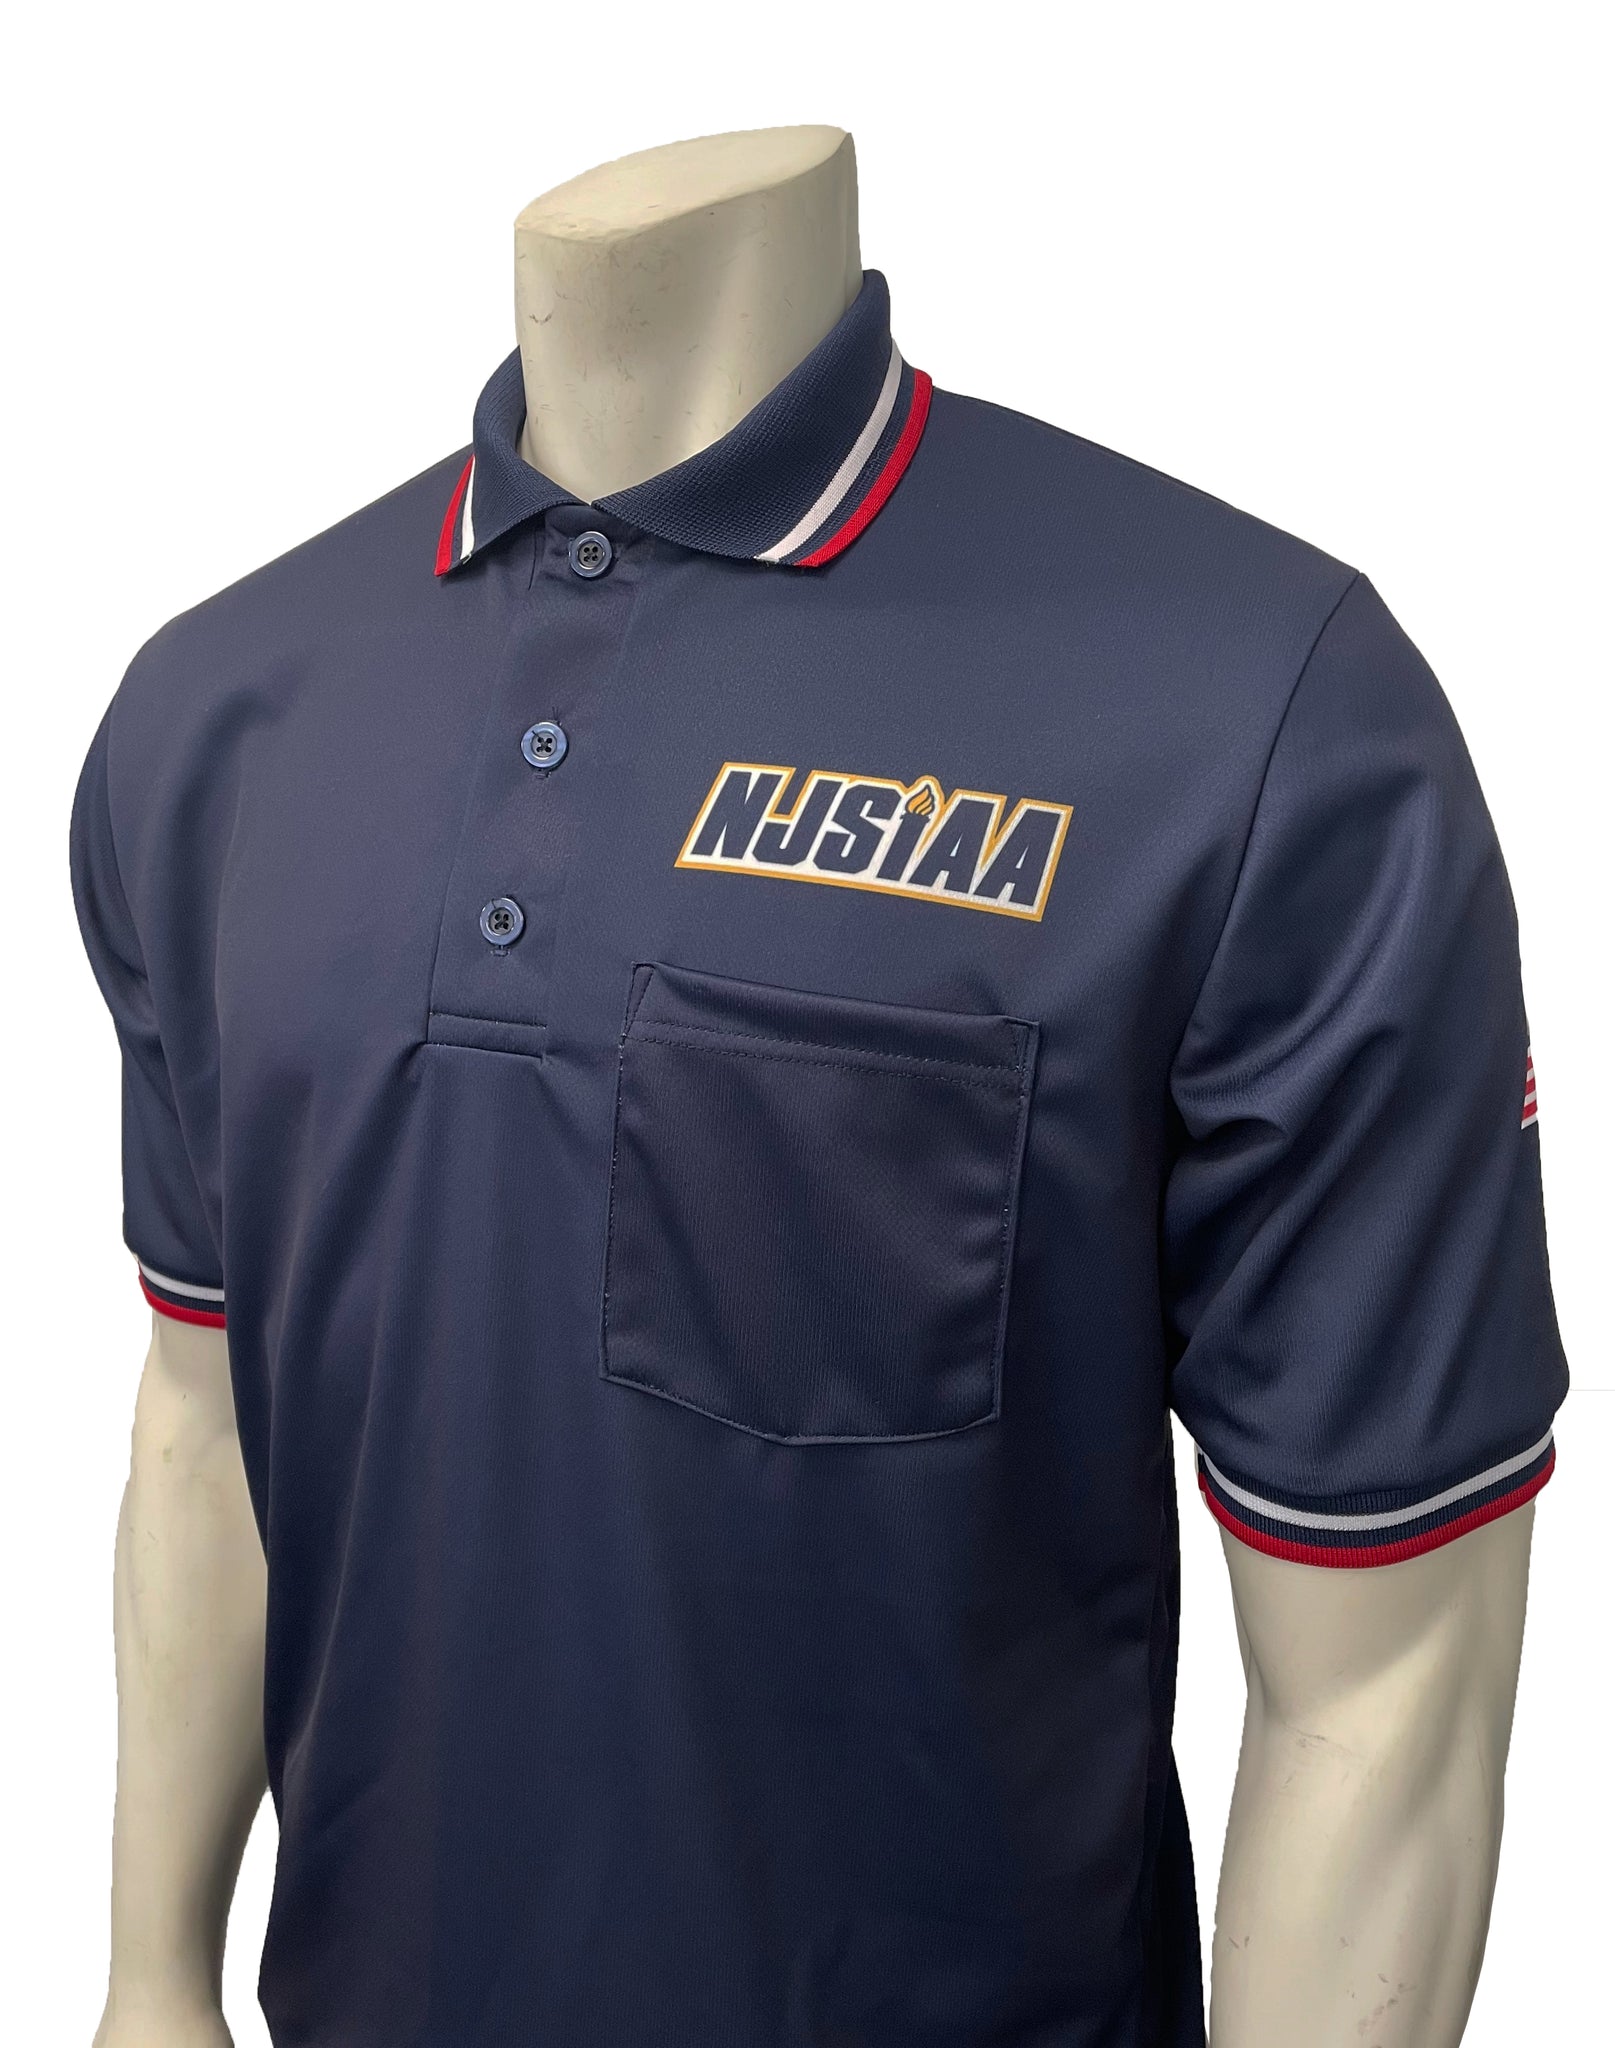 USA300NJ-NY - Smitty "Made in USA" - NJSIAA Men's Baseball/Softball Umpire Short Sleeve Shirt - Navy